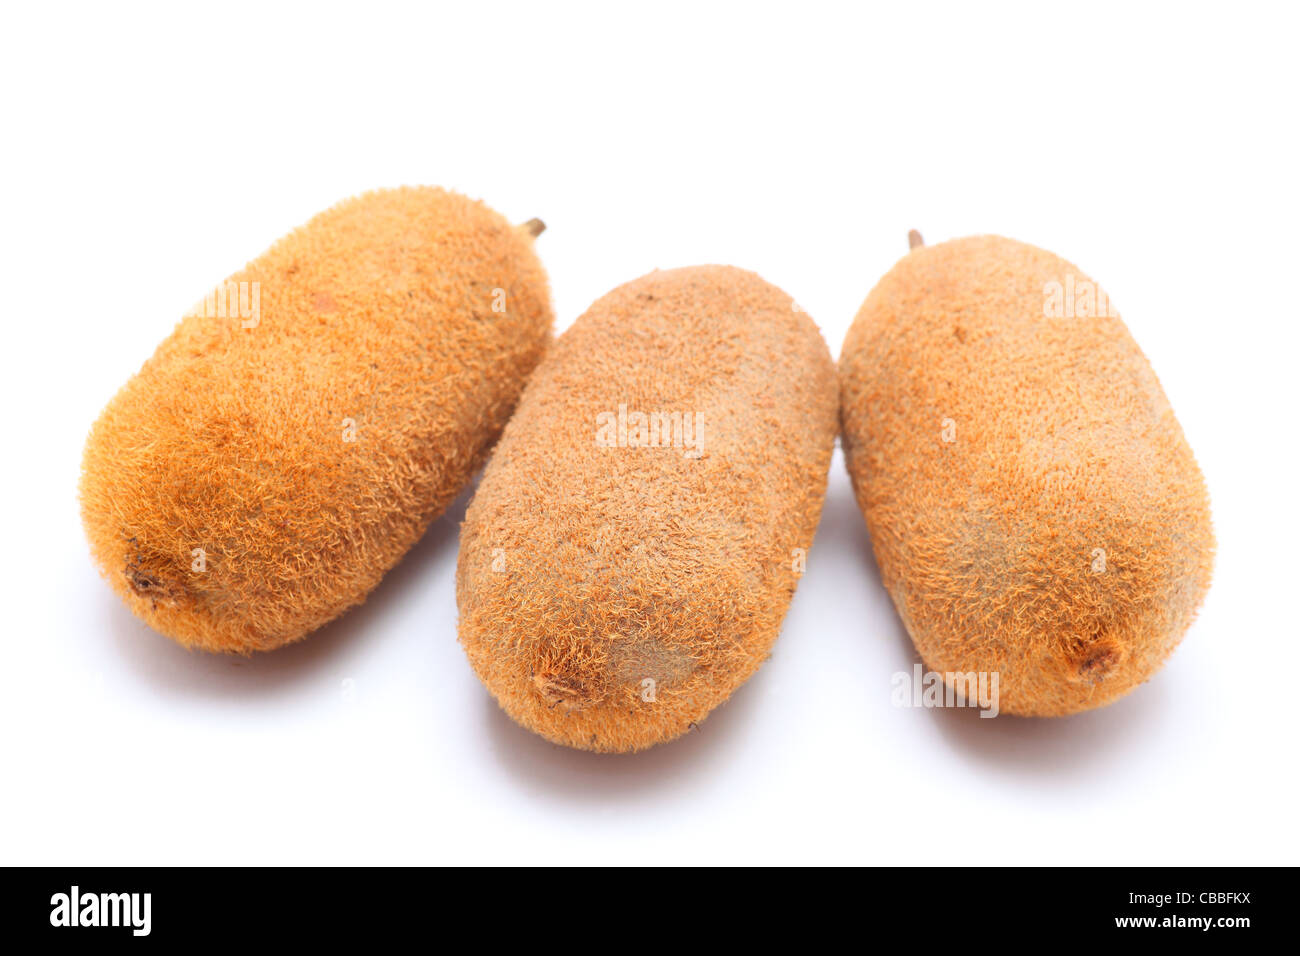 kiwifruit on white background close up shoot Stock Photo